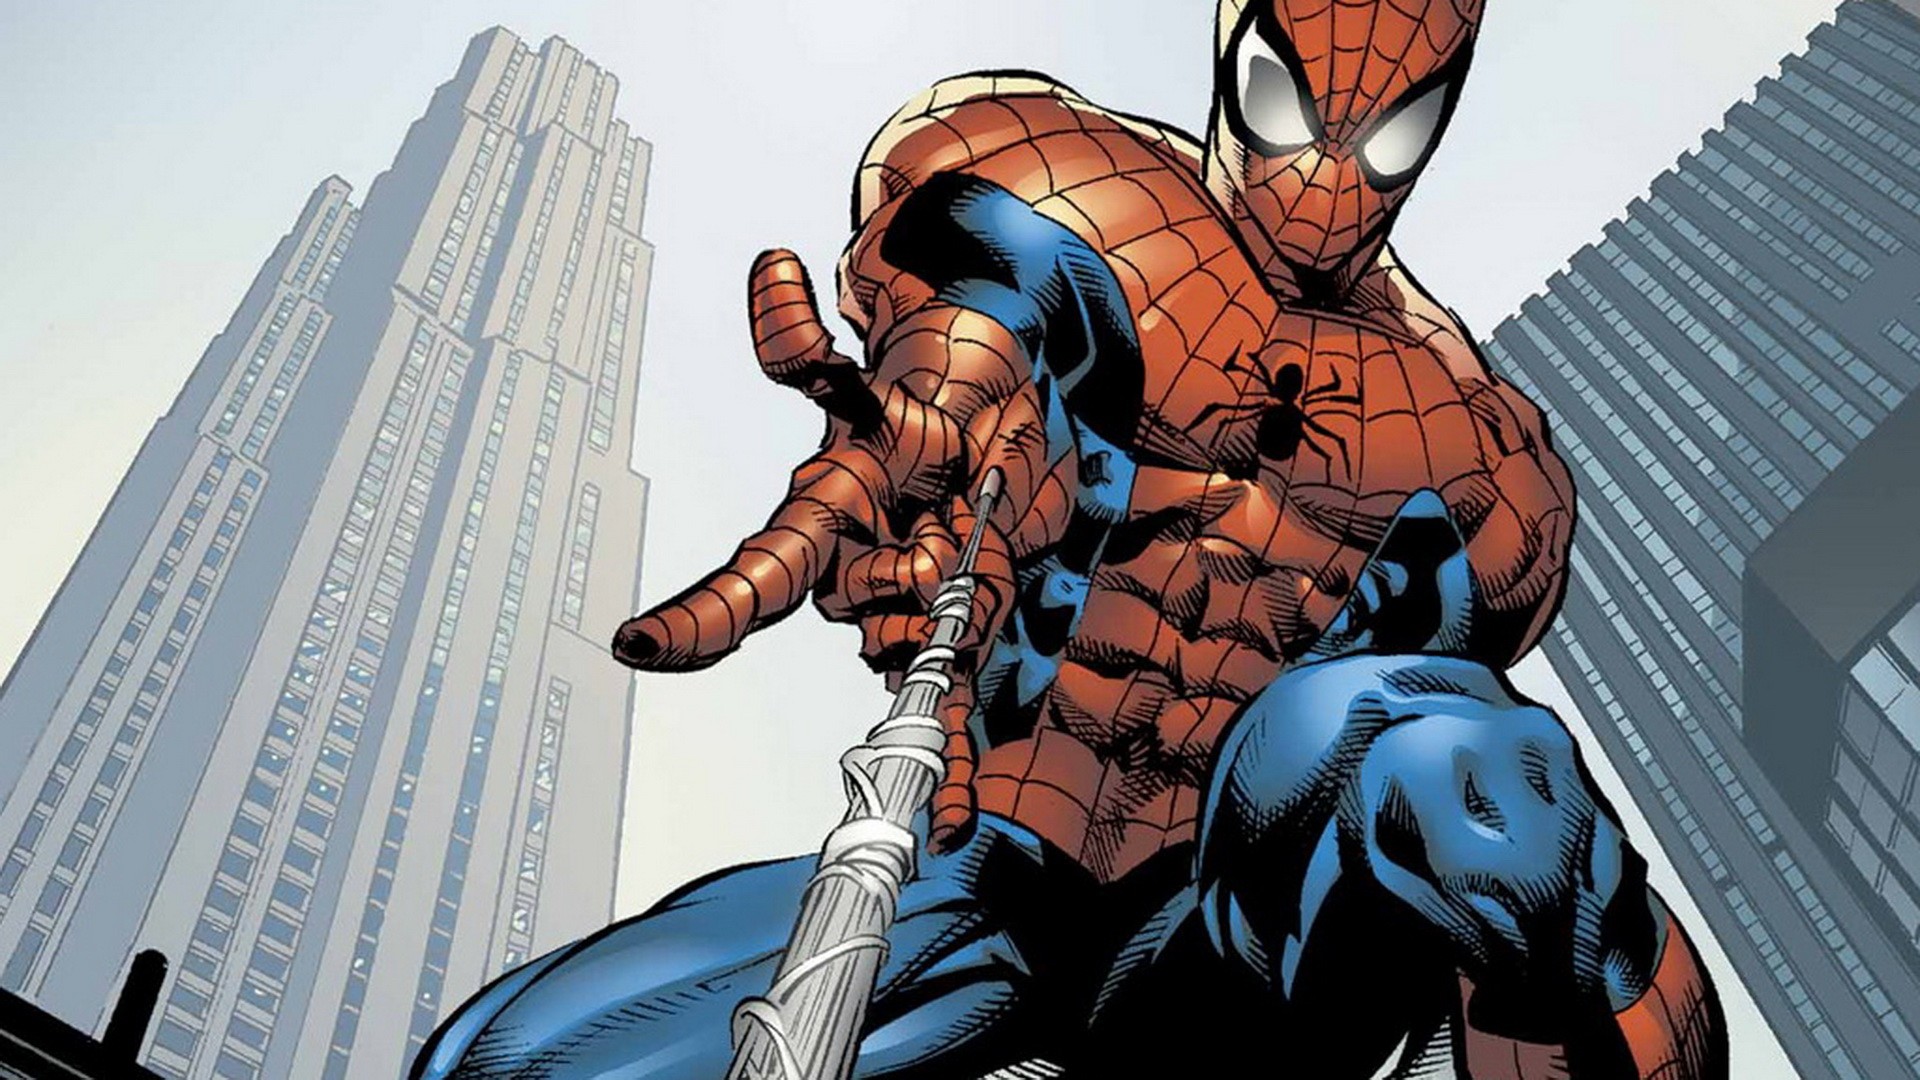 46+] Spiderman Comic Wallpaper - WallpaperSafari